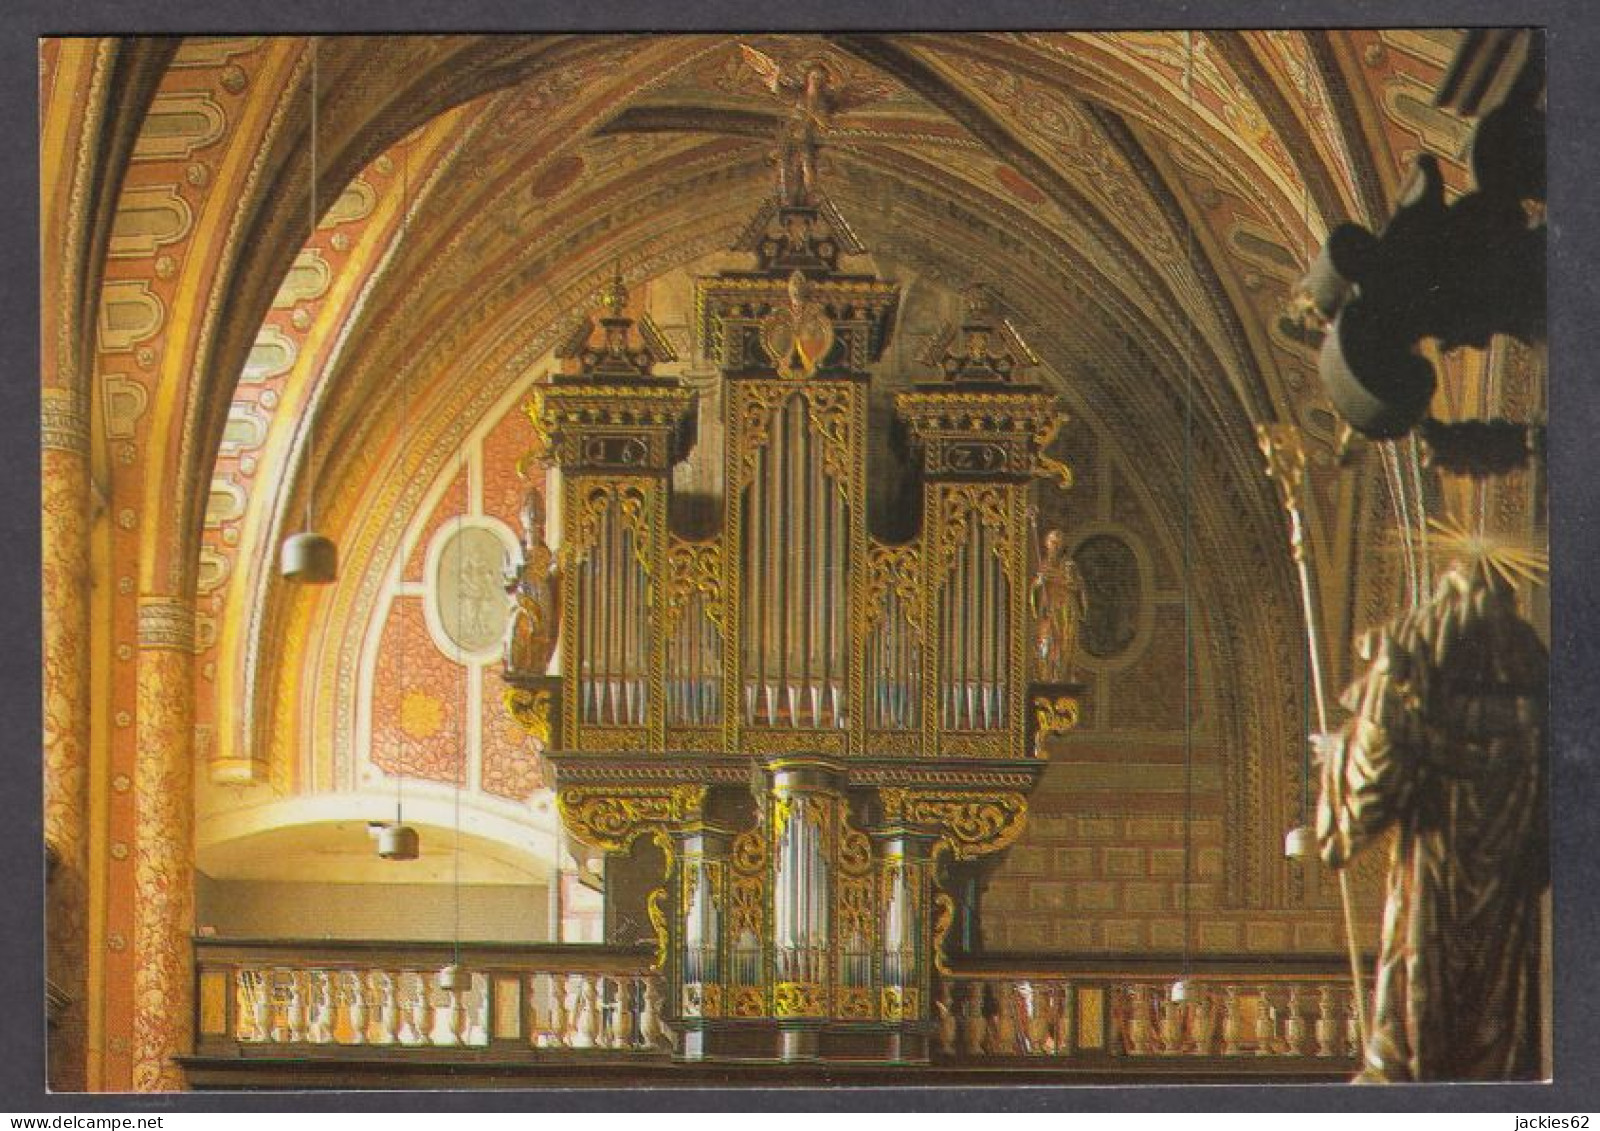 126323/ ST. WOLFGANG, Wallfahrtskirche, Renaissance Orgel - St. Wolfgang